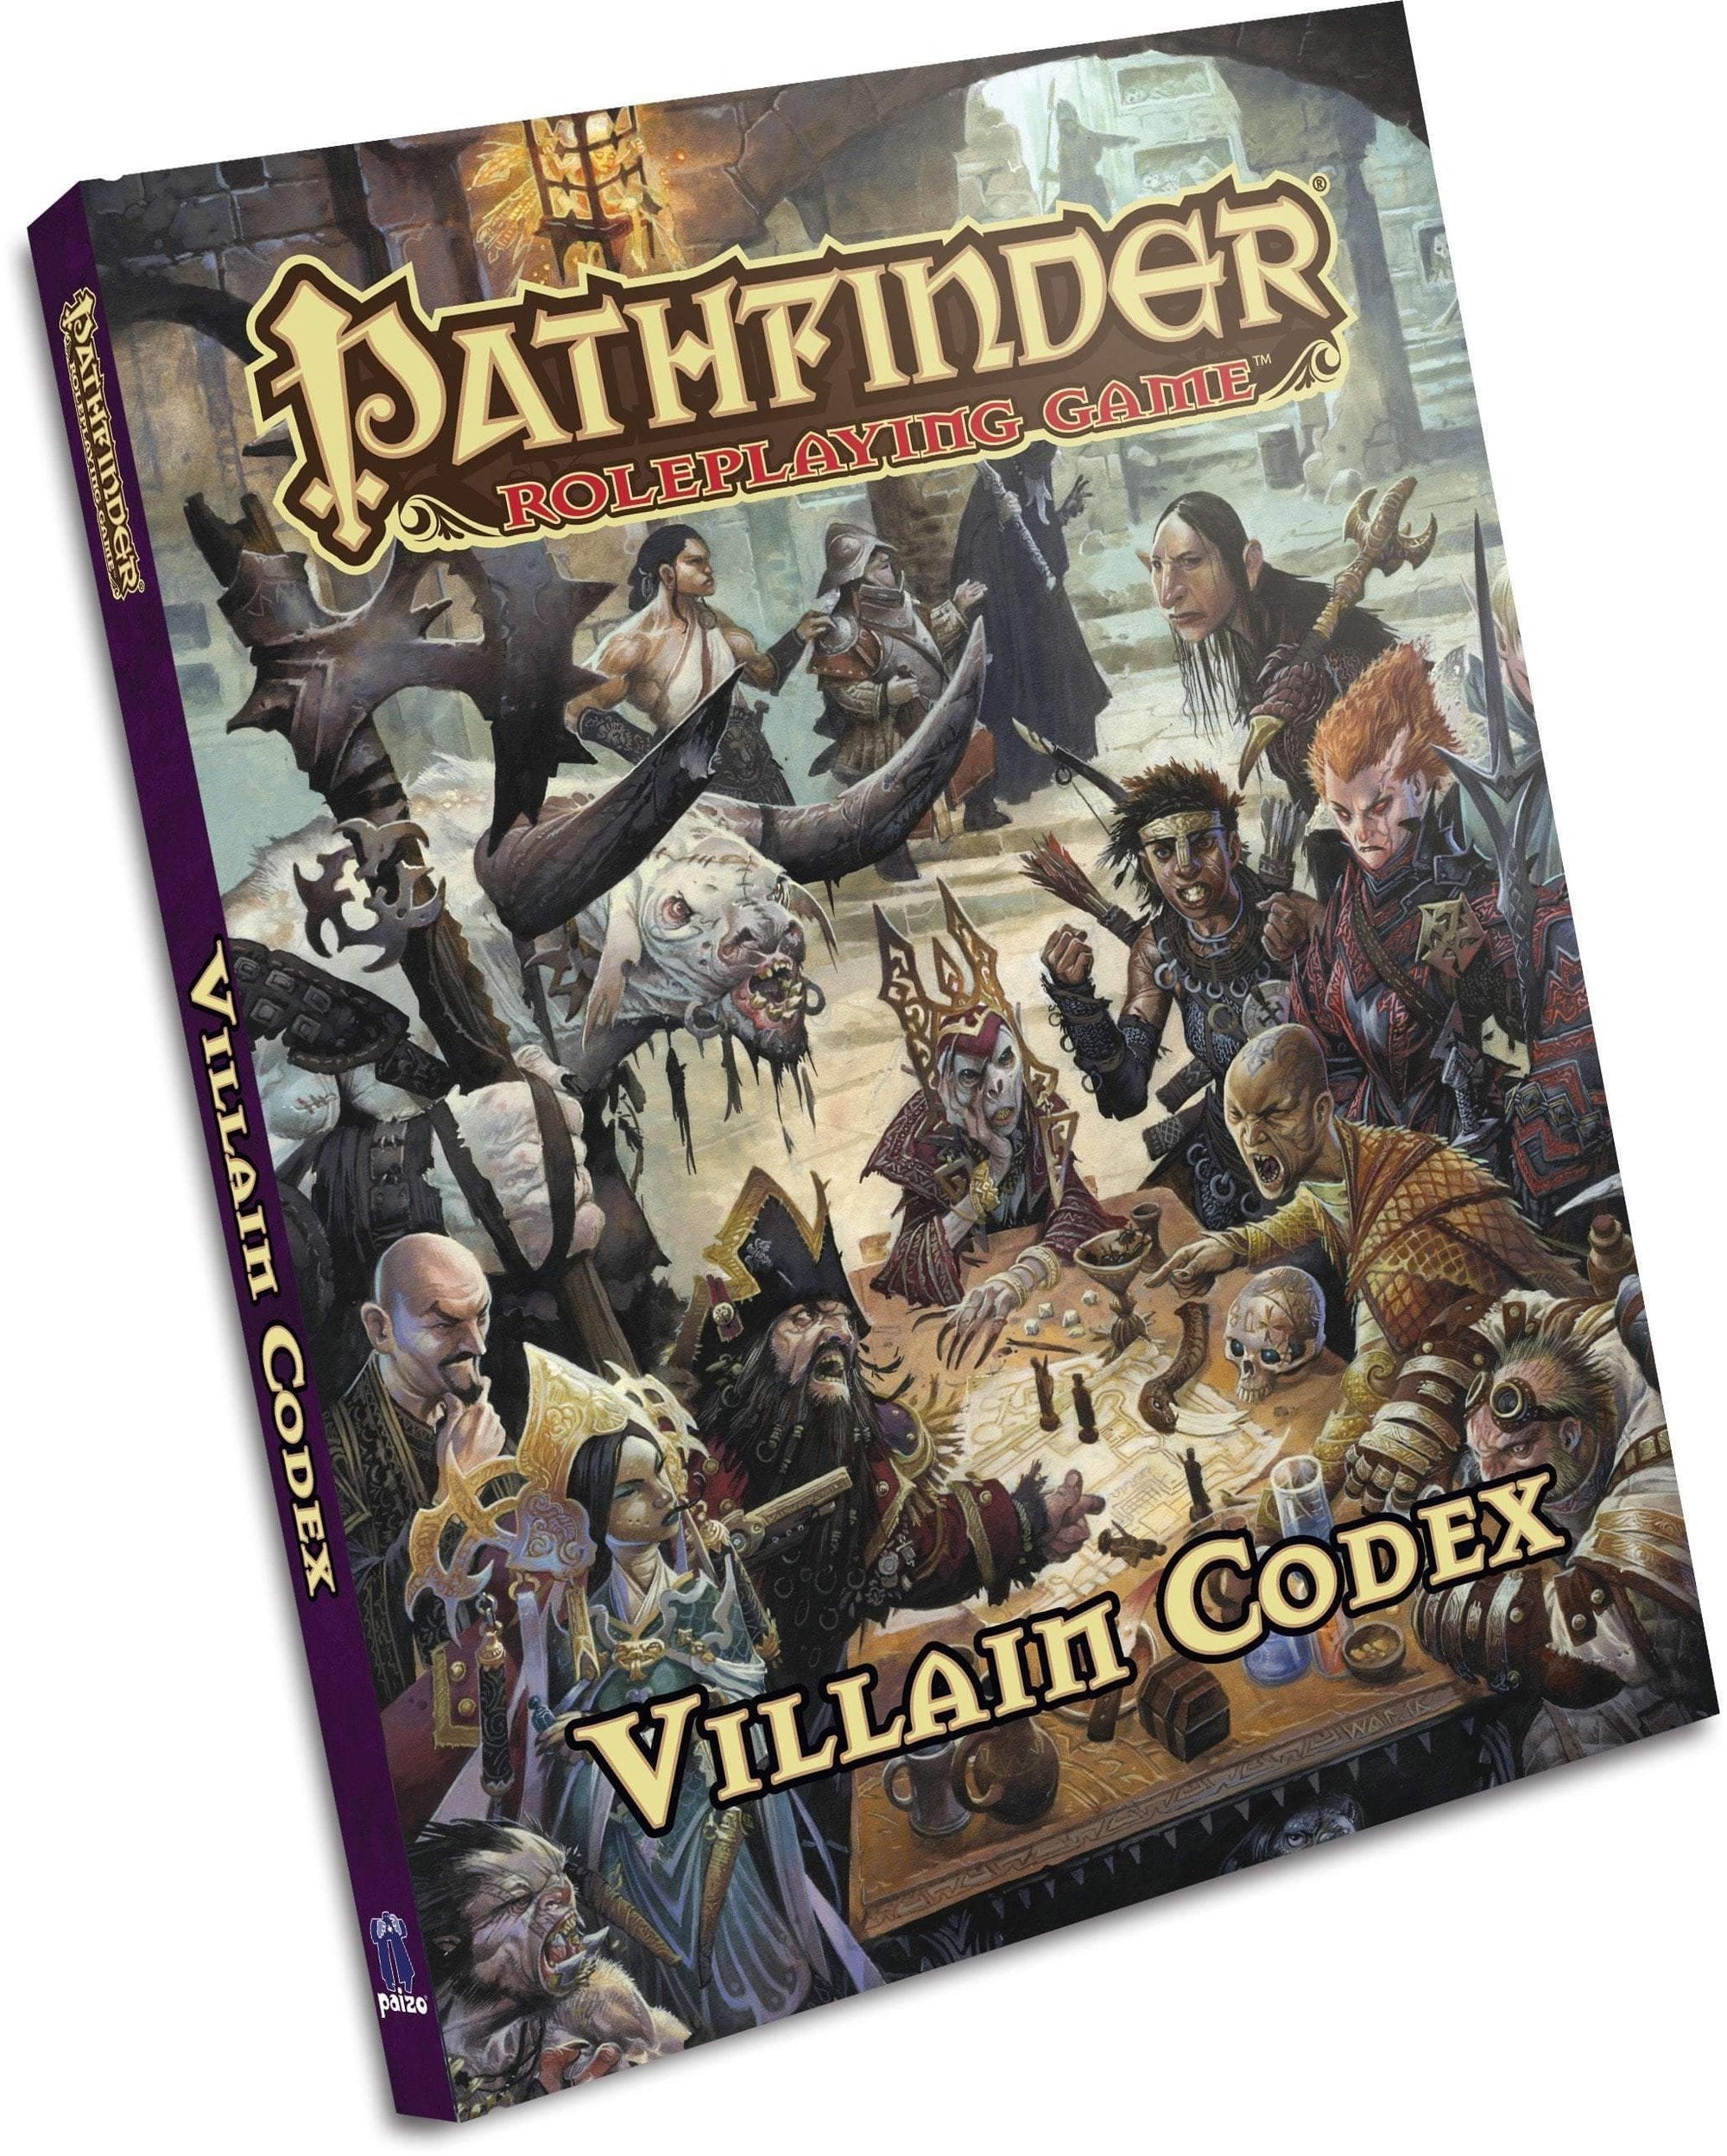 Pathfinder: Villain Codex Retail Rollspel spel Game Steward